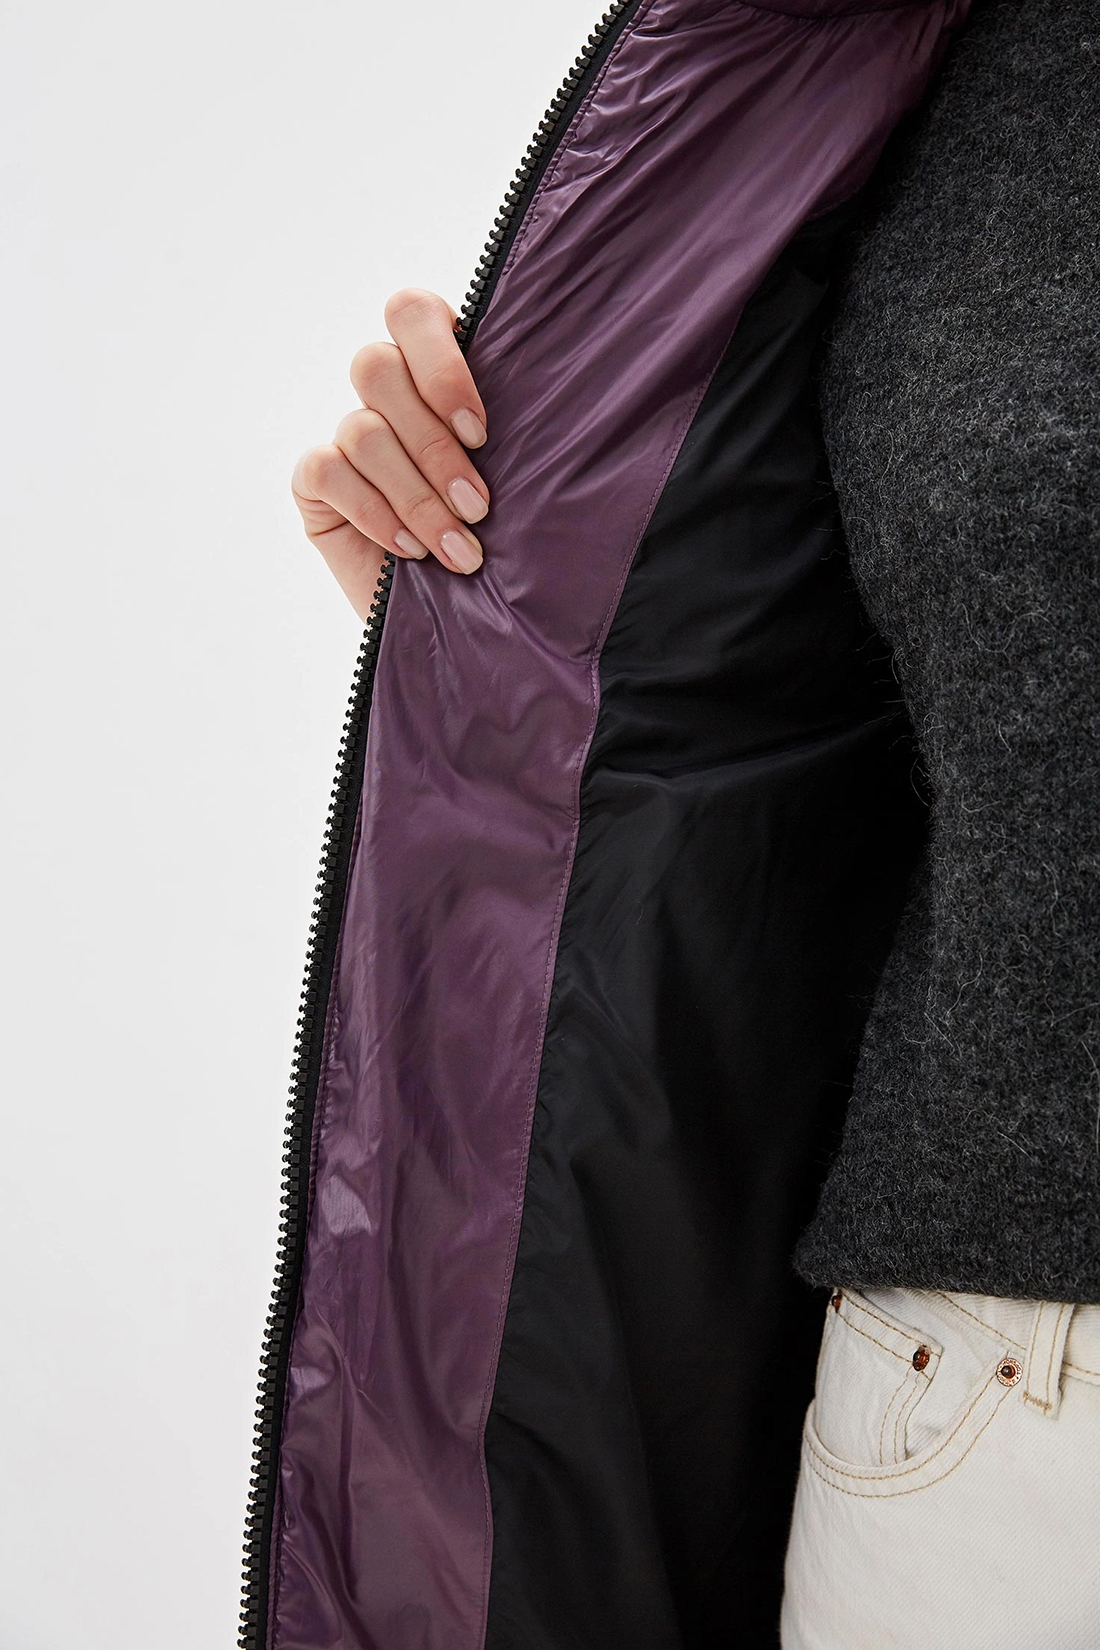 Пуховик с контрастной подкладкой и чернобуркой (арт. baon B009570), размер M, цвет фиолетовый Пуховик с контрастной подкладкой и чернобуркой (арт. baon B009570) - фото 3